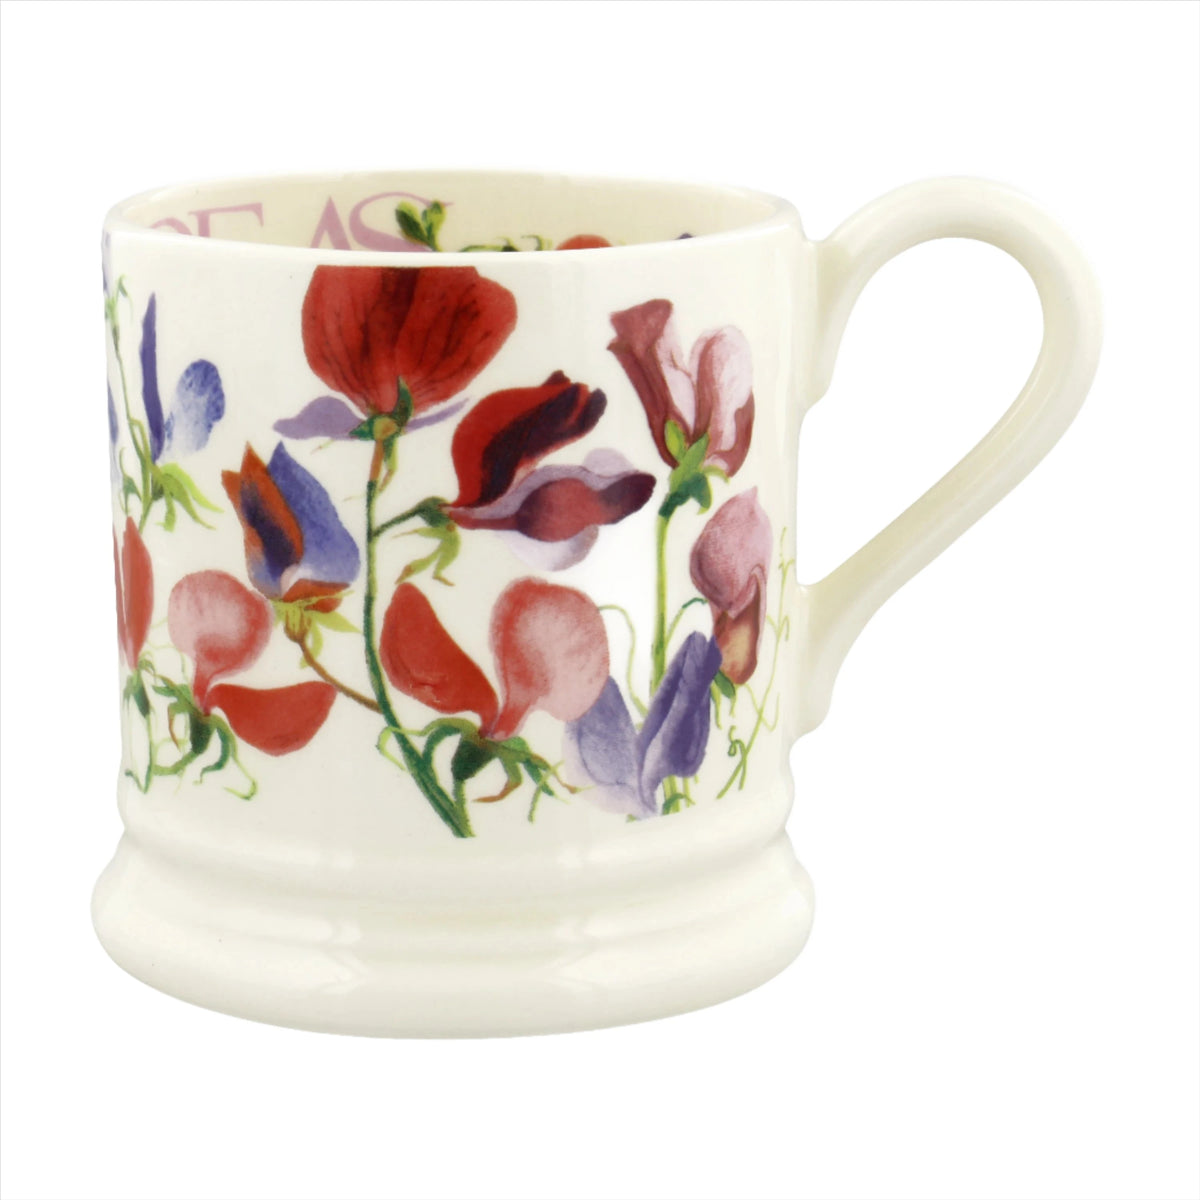 Emma Bridgewater Multi Sweet Pea Flowers Printed Mug